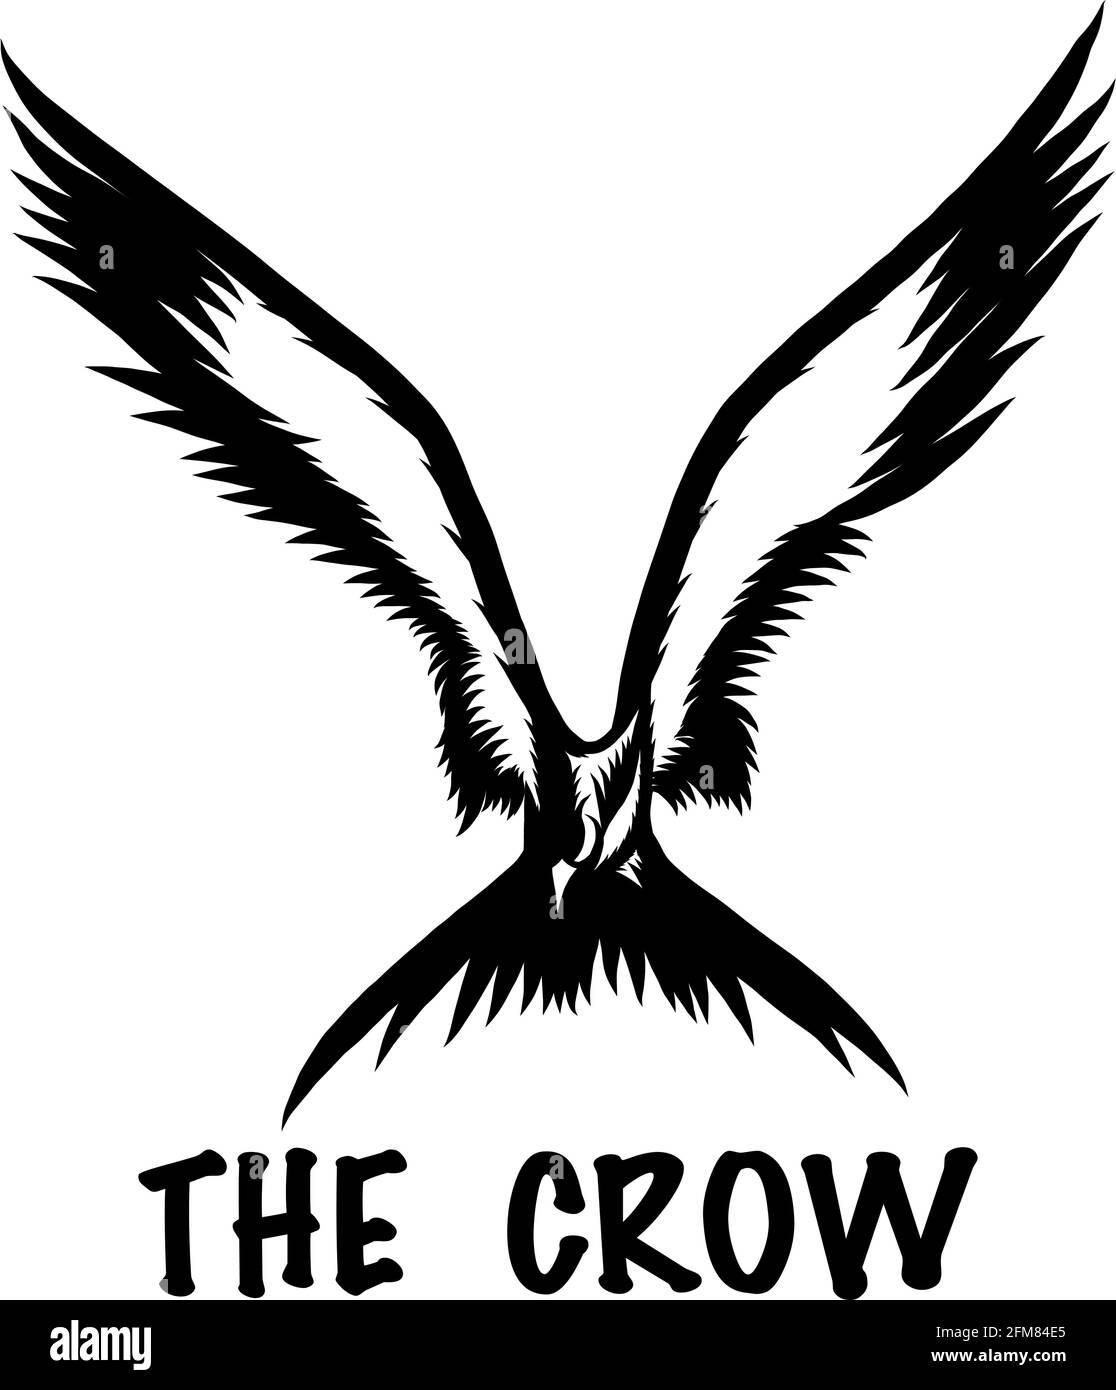 Una silhouette vettoriale in bianco e nero che raffigura un corvo in volo, perfetto come un logo, una t-shirt o un tatuaggio. Illustrazione Vettoriale